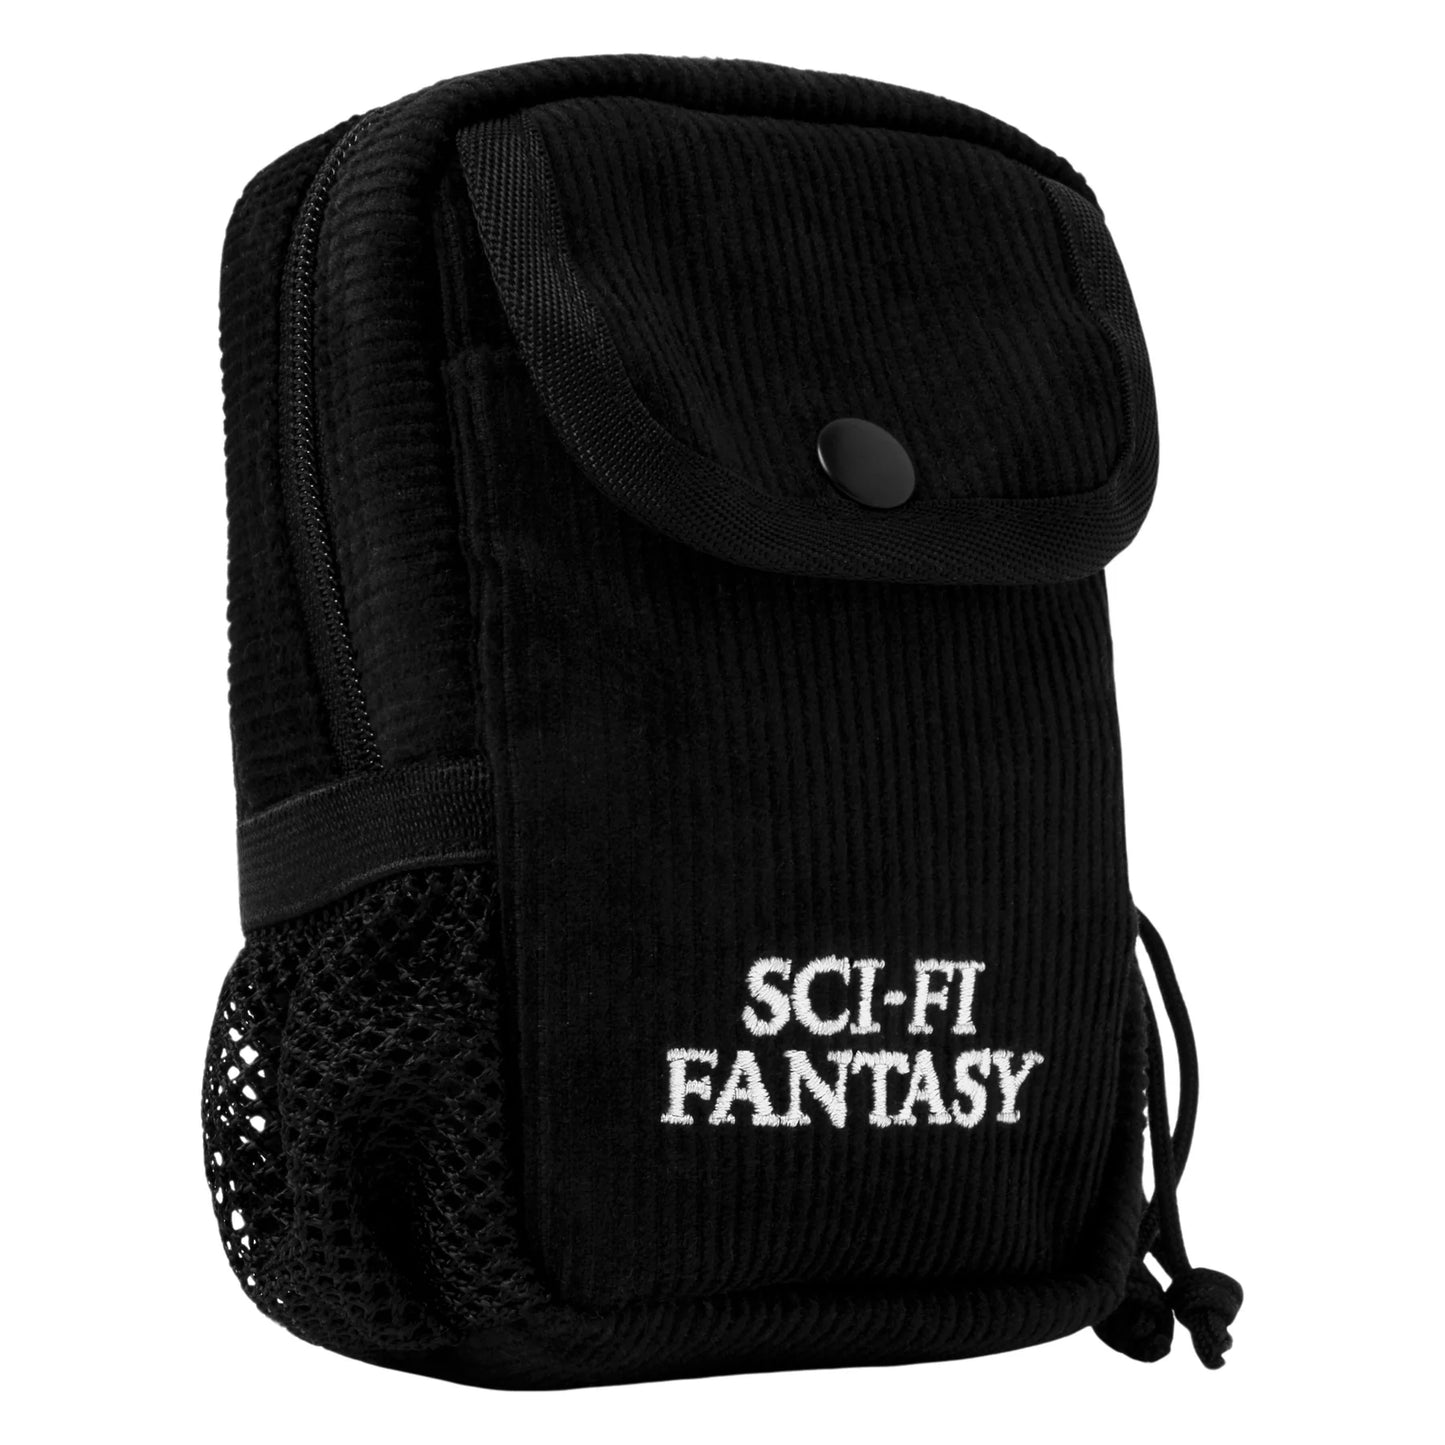 Sci-Fi Fantasy Camera Pack Black